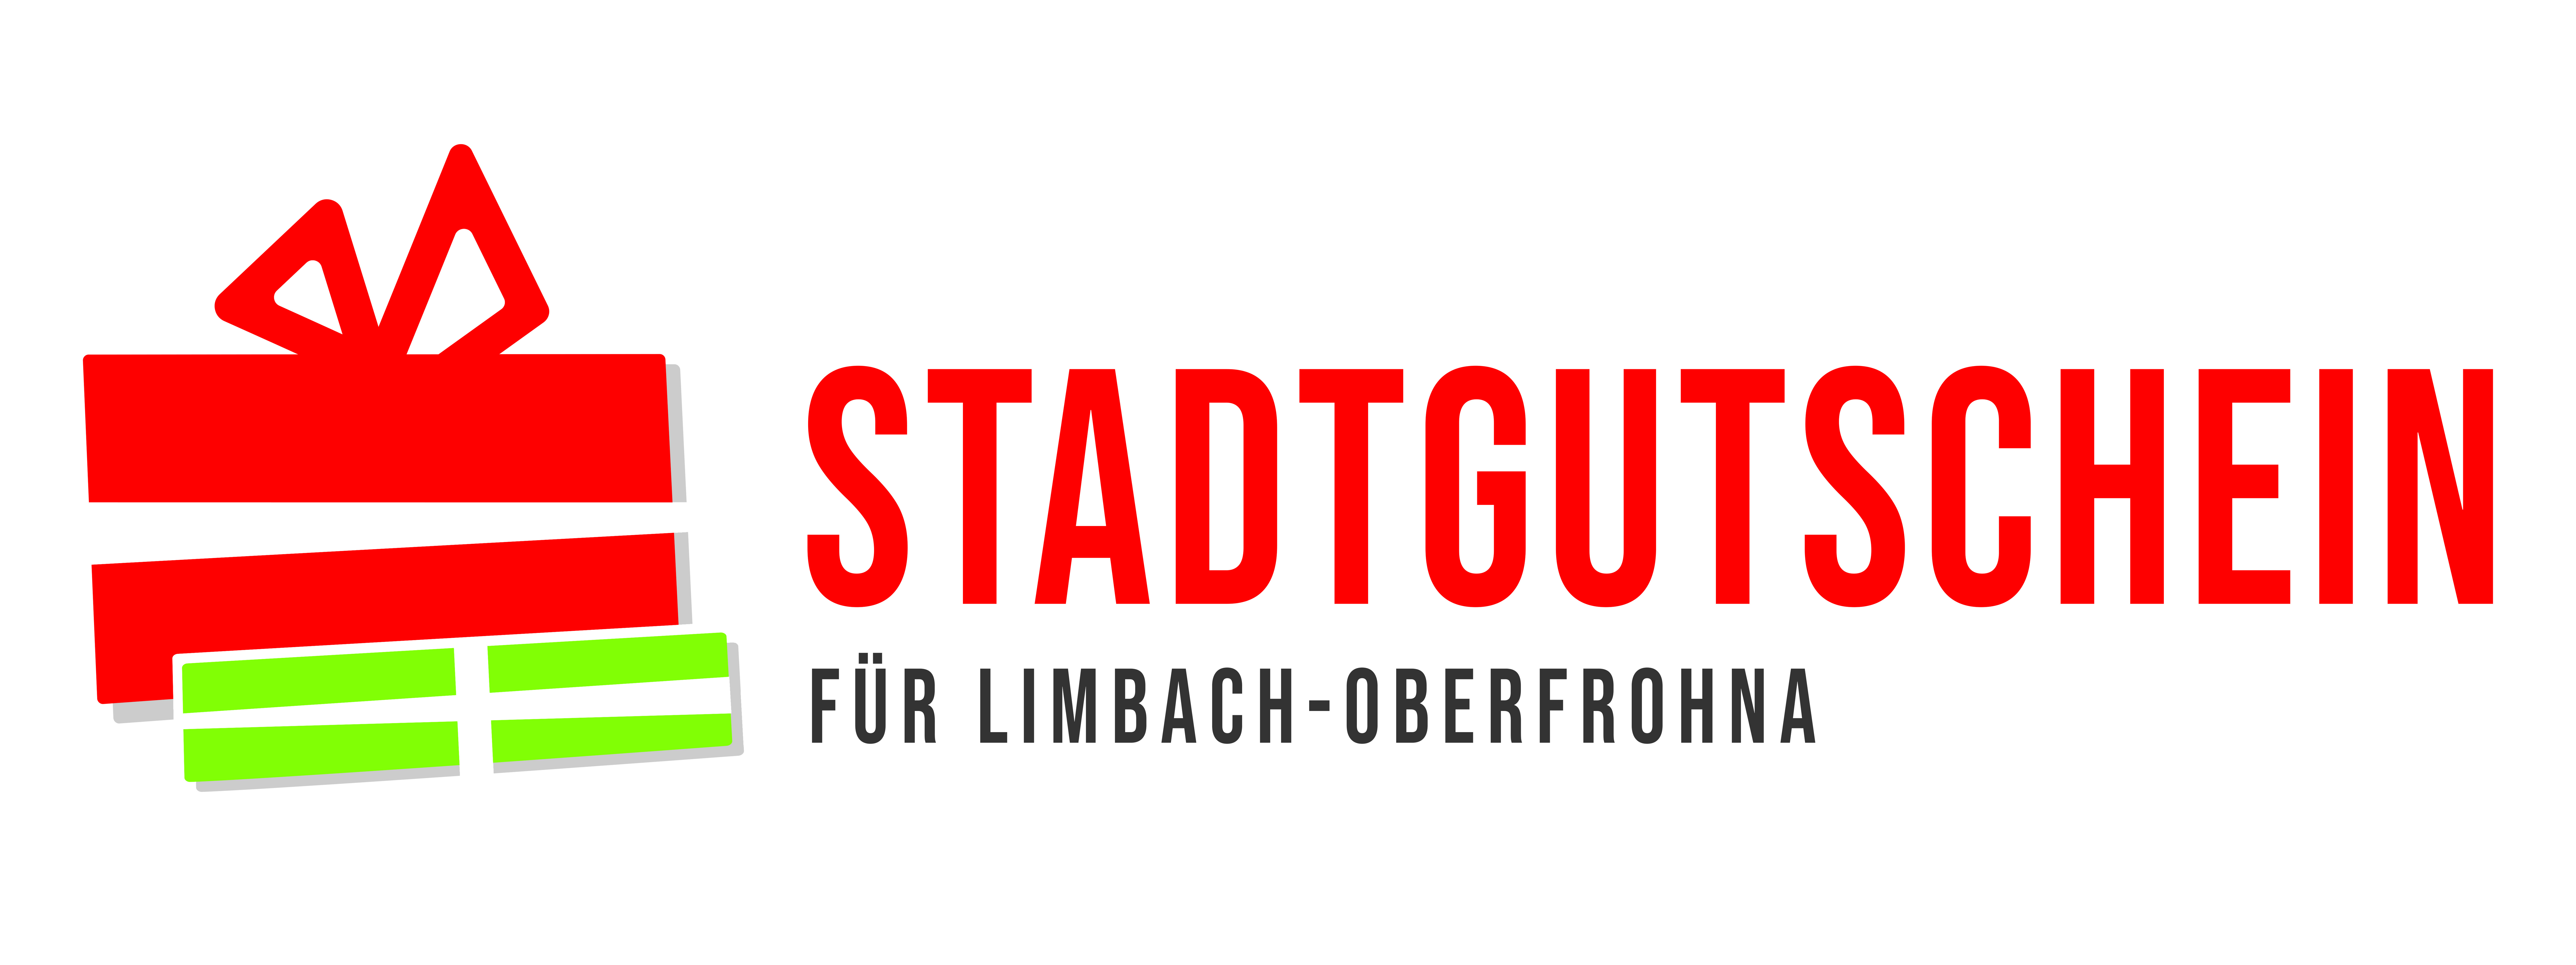 Logo Stadtgutschein